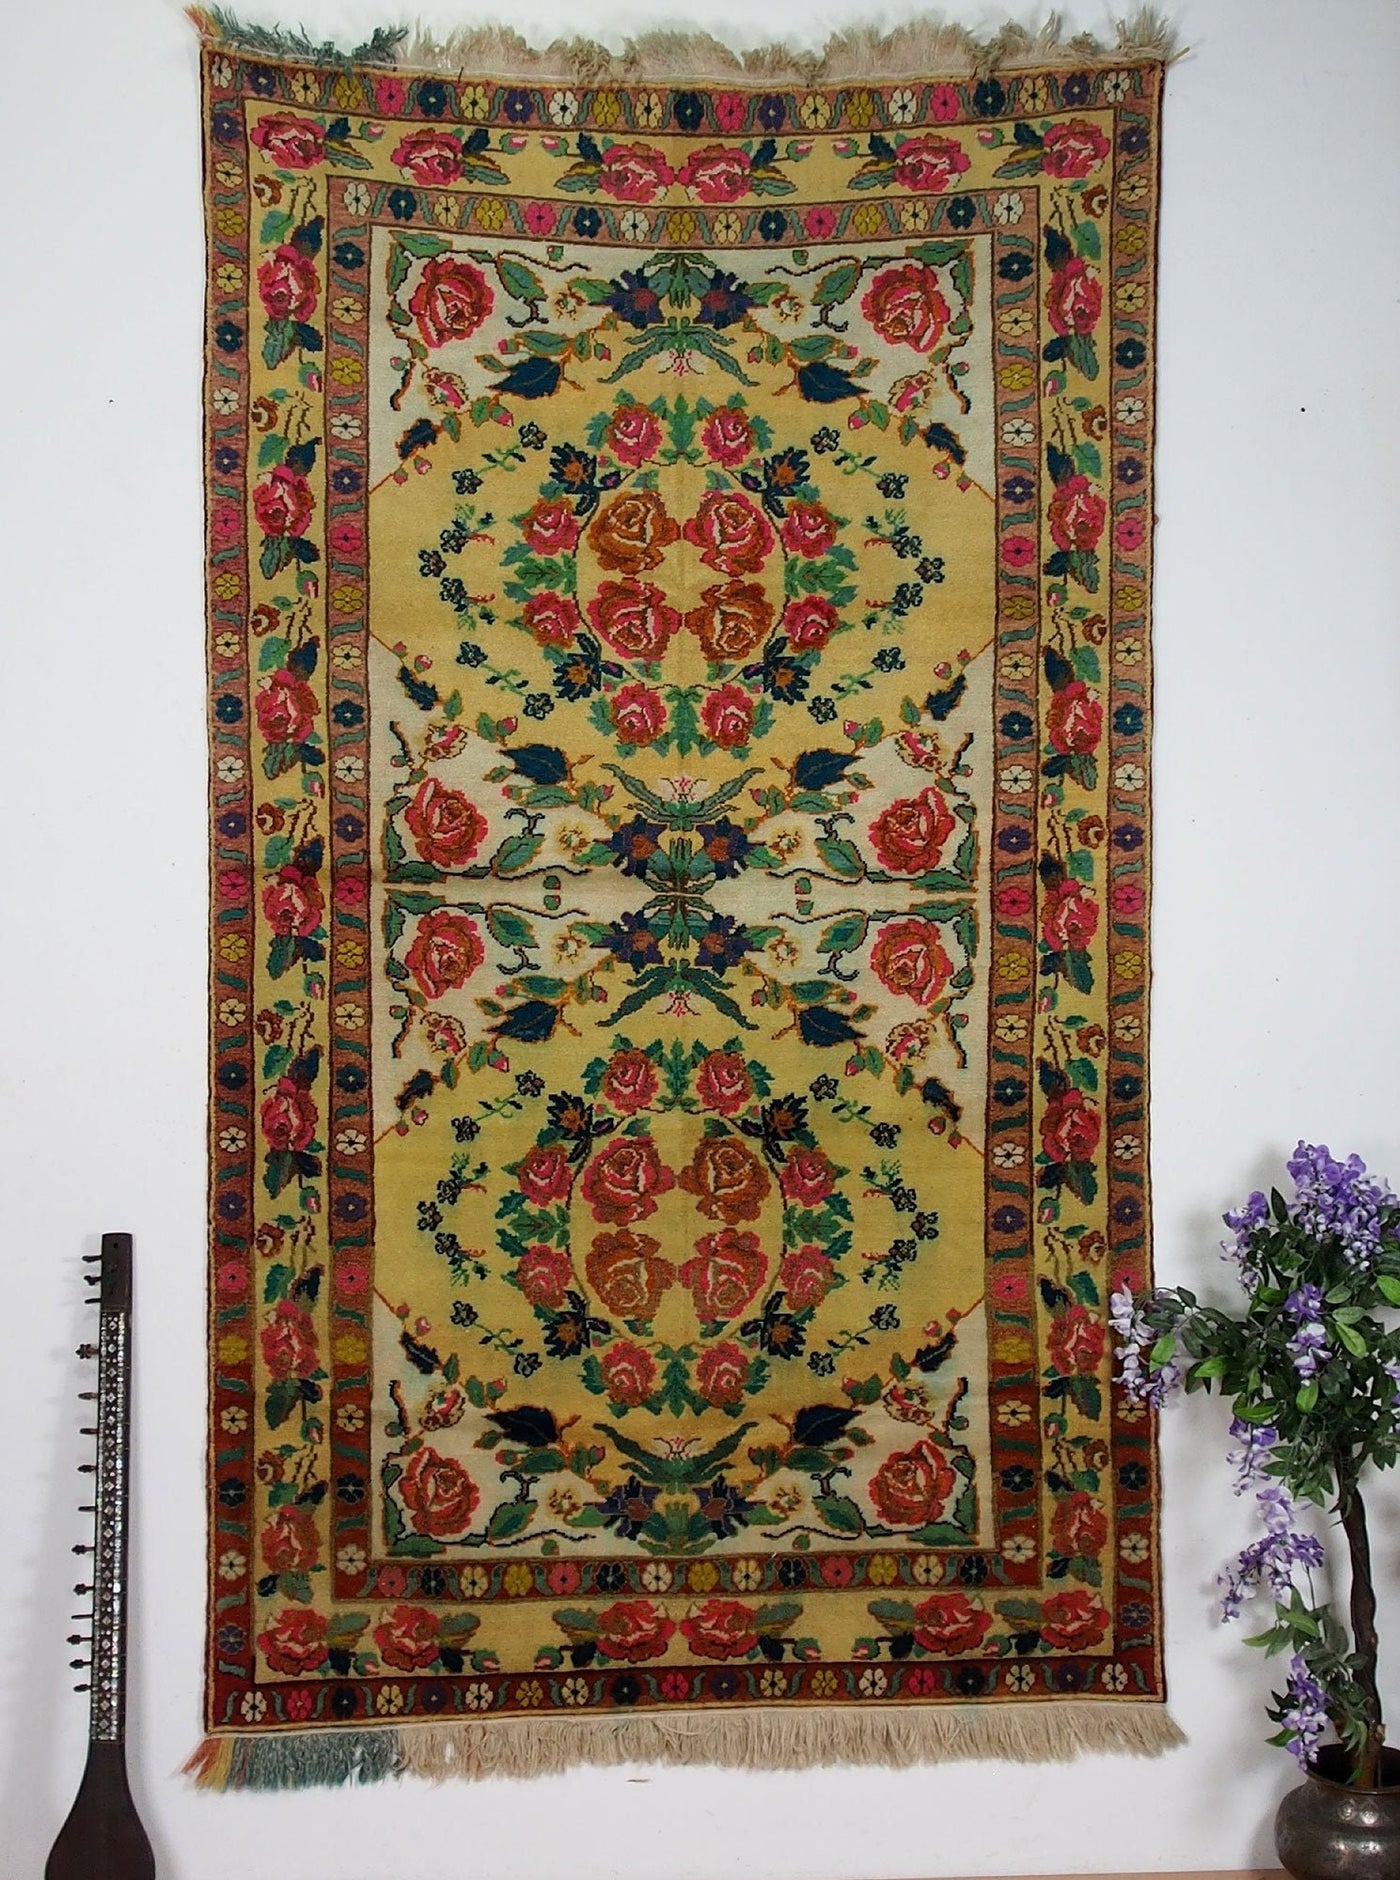 290x170 cm sehr seltener antike handgeknüpfte  orientteppich nomad rug Carpet  Rosen Teppich Nr:19/1  Orientsbazar   